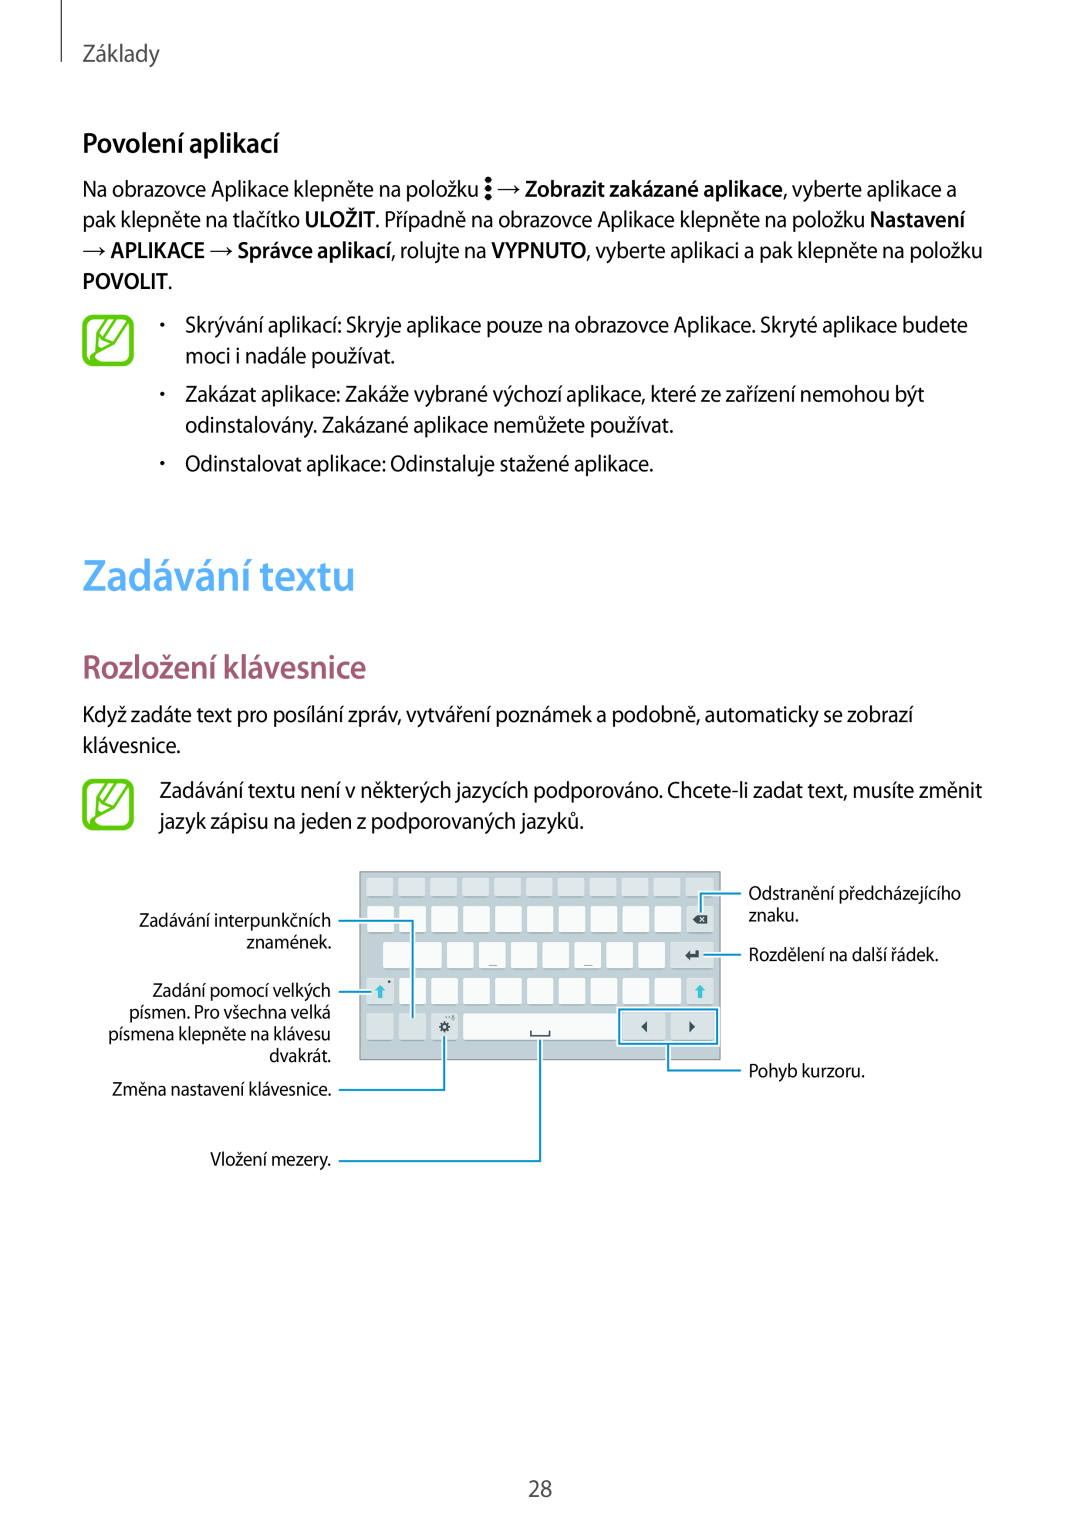 Samsung SM-T700NZWAXEO, SM-T700NZWAEUR manual Zadávání textu, Rozložení klávesnice, Povolení aplikací, Povolit, Základy 